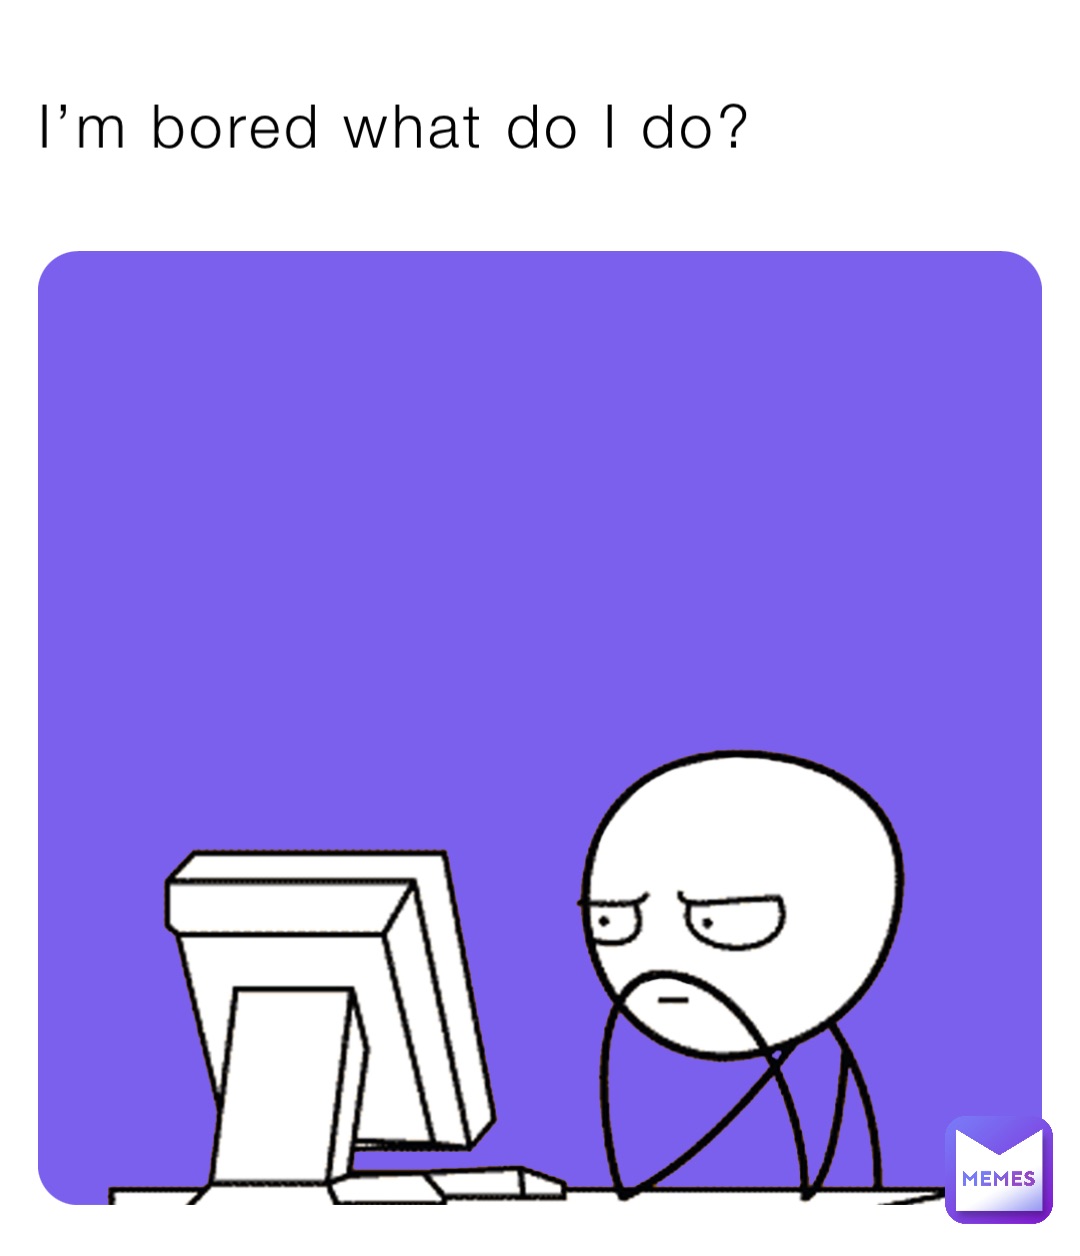 I’m bored what do I do?